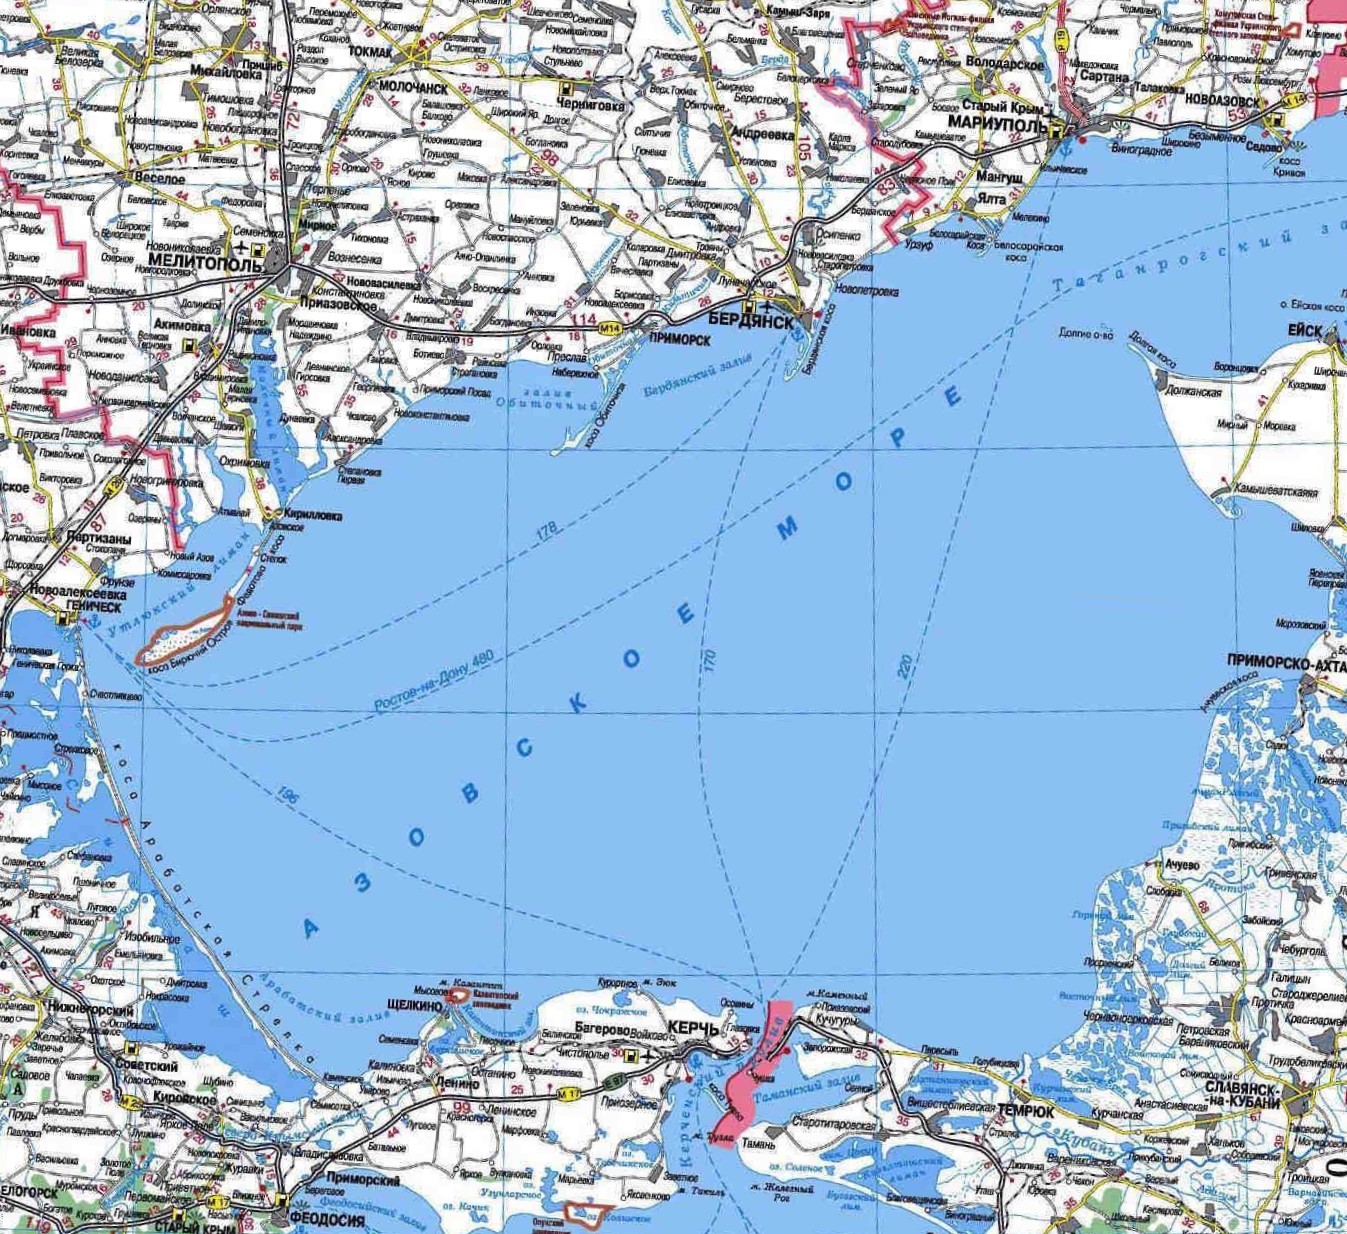 Карта Азовского моря (Россия) на русском языке, расположение на карте мирас городами, метро, центра, районов и округов